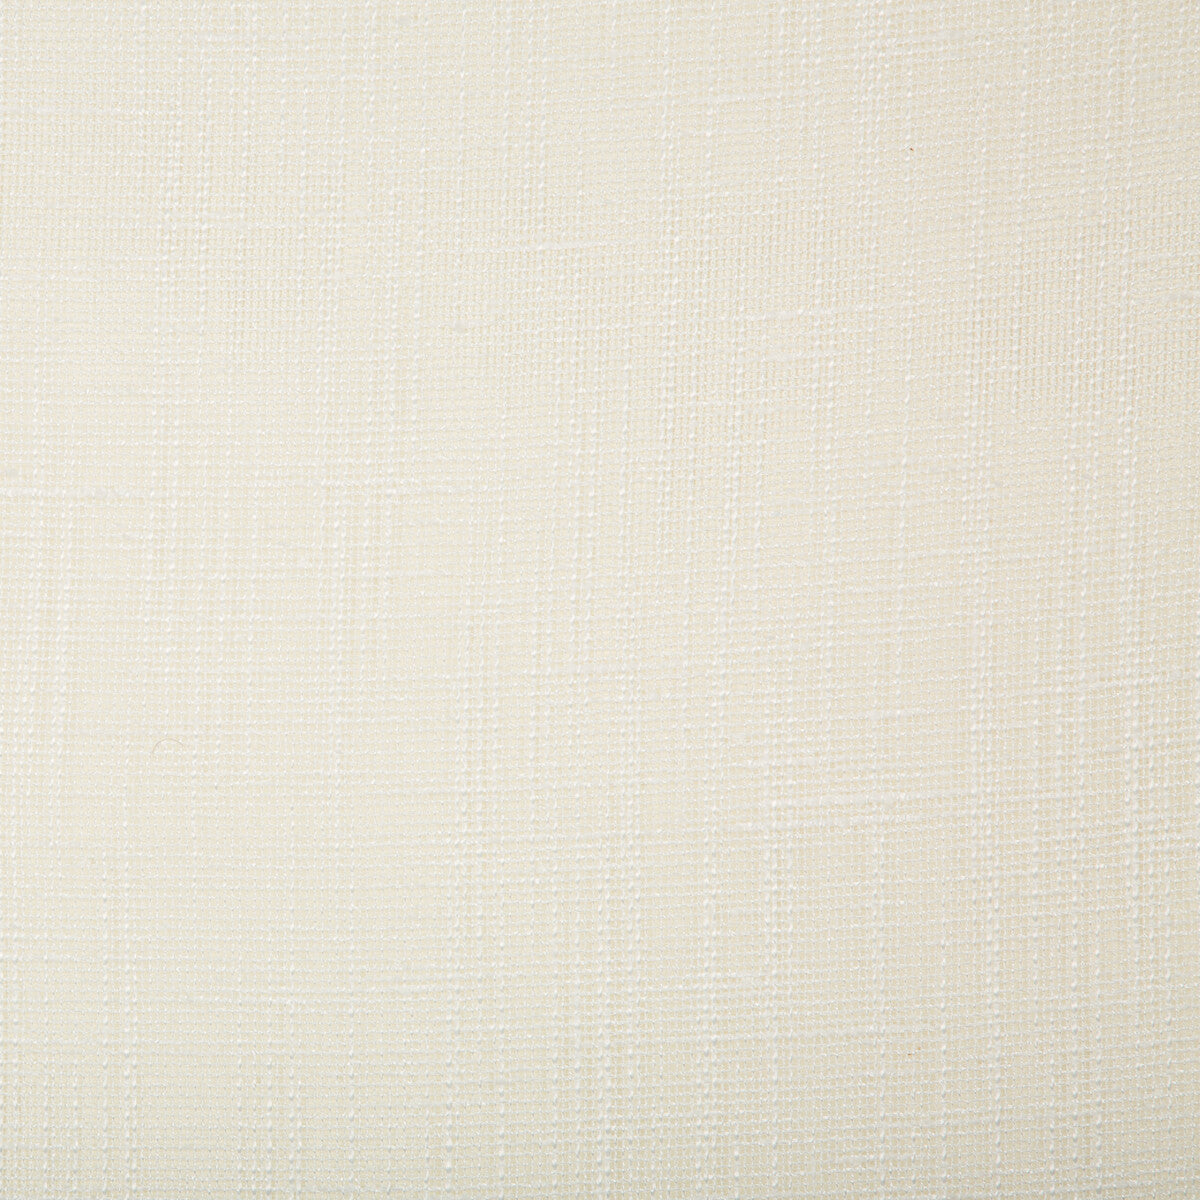 Kravet Basics fabric in 4669-1 color - pattern 4669.1.0 - by Kravet Basics